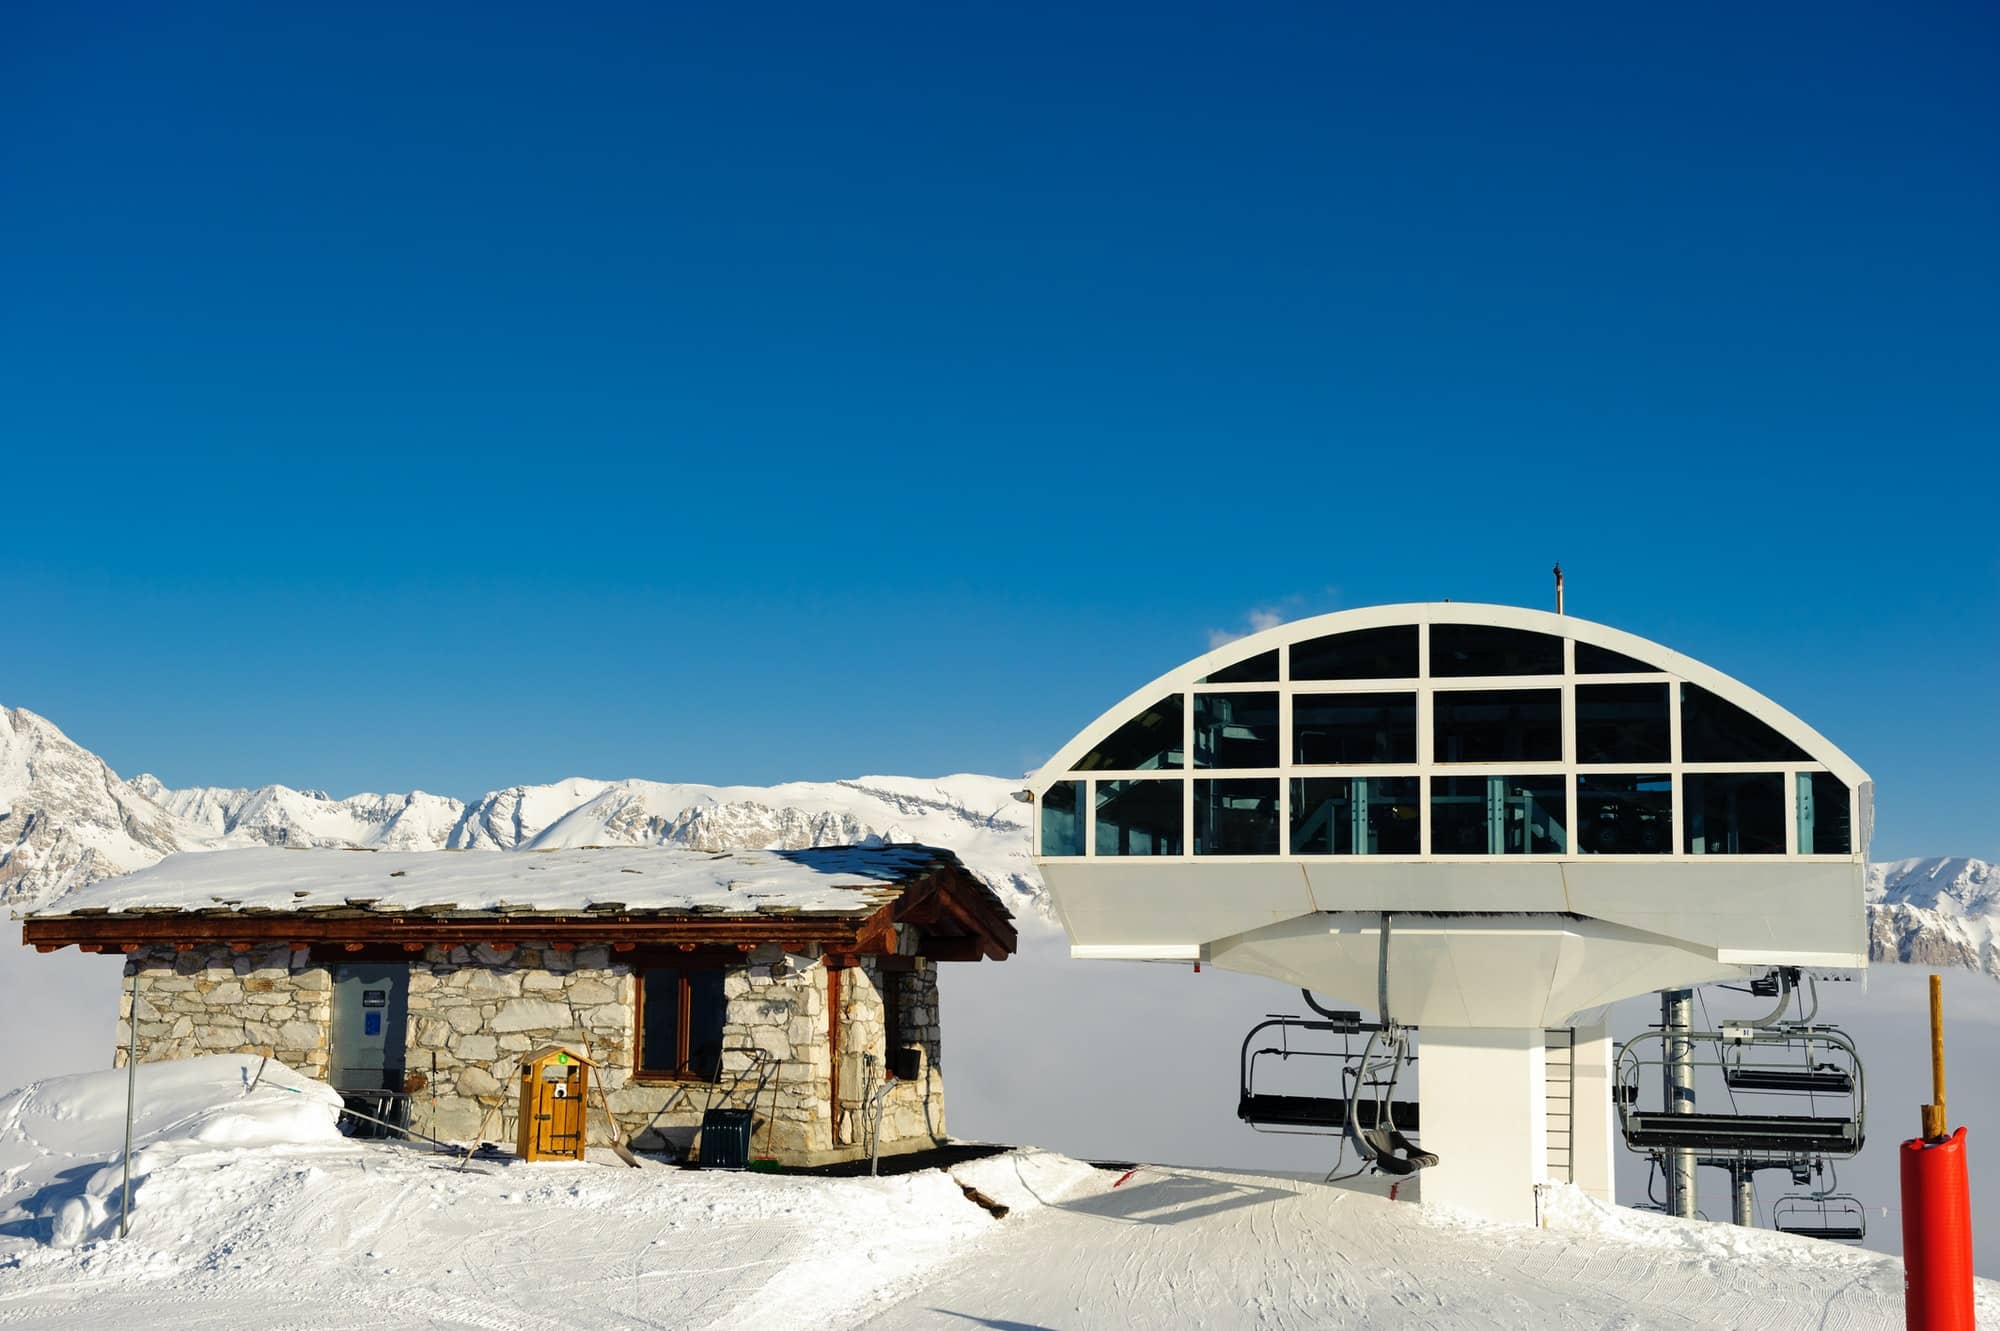 Location à Valmorel : comment trouver des chambres pour vos vacances de ski à la montagne